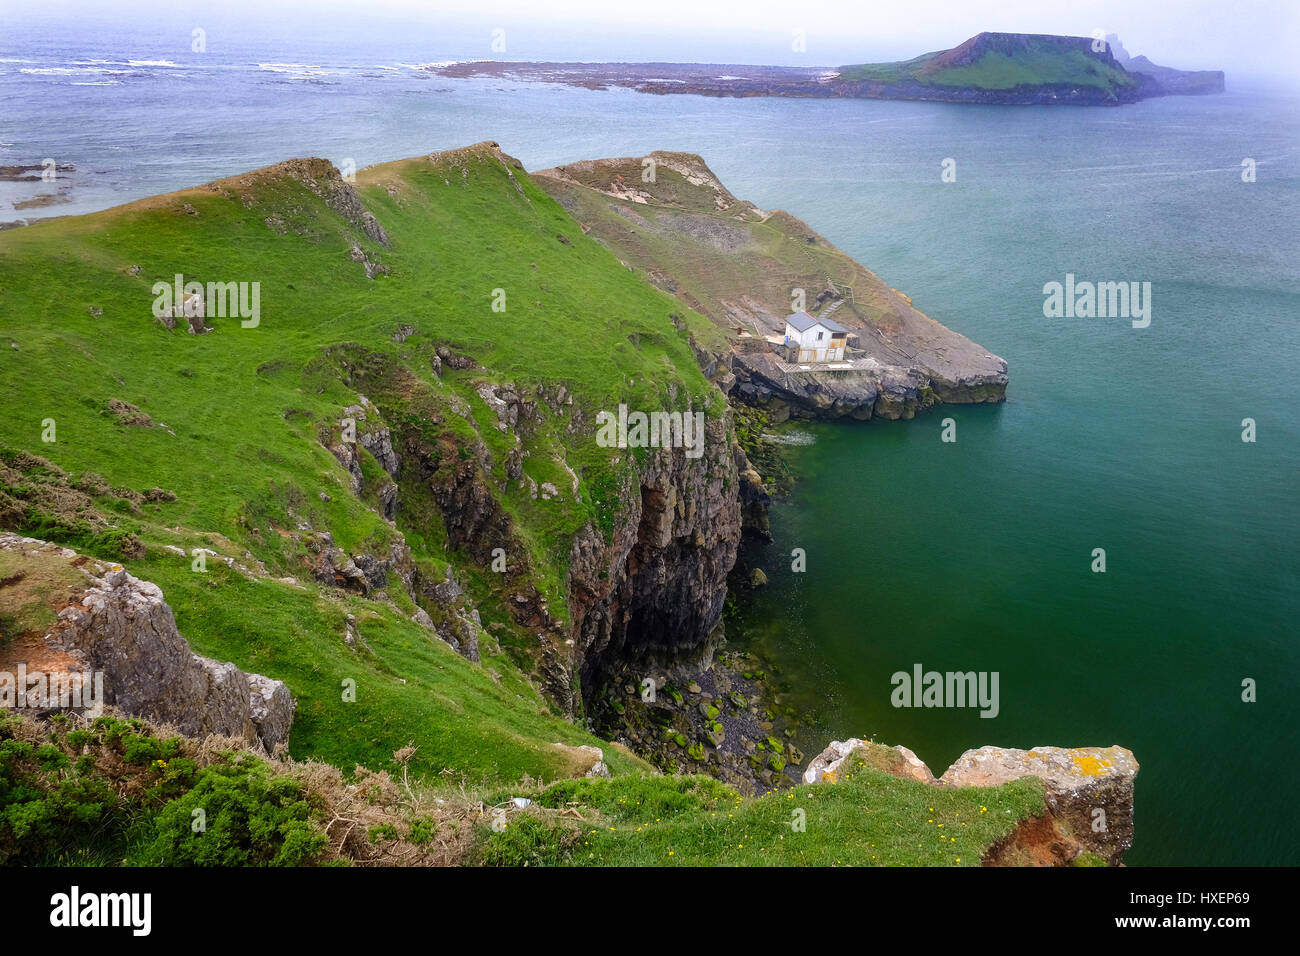 La tête de vis sans fin (île de marée) vue de Rhossili Bay, la péninsule de Gower, dans le sud du Pays de Galles (Royaume-Uni). La tête de vis sans fin est composée de deux îles, intérieur et extérieur. Banque D'Images